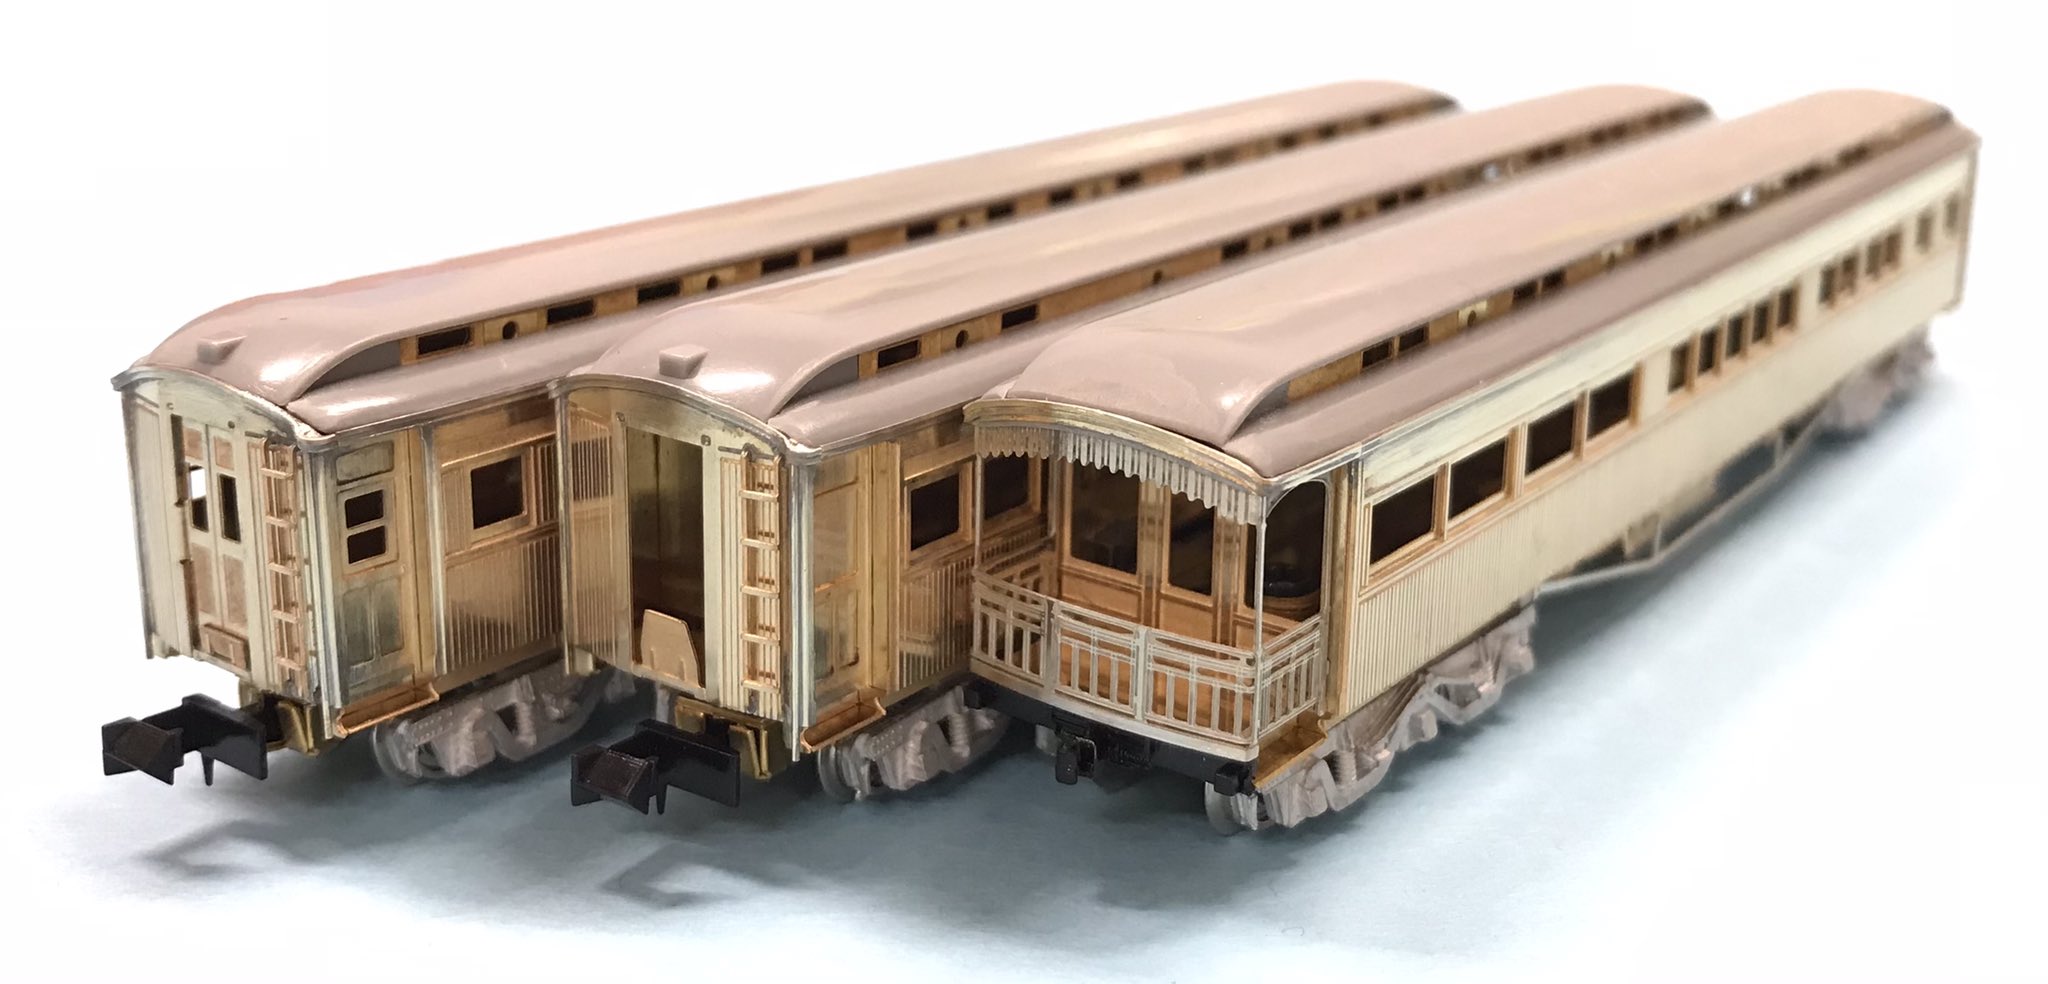 特急1・2列車用 大形木製客車(オイテ27000他7形式) -